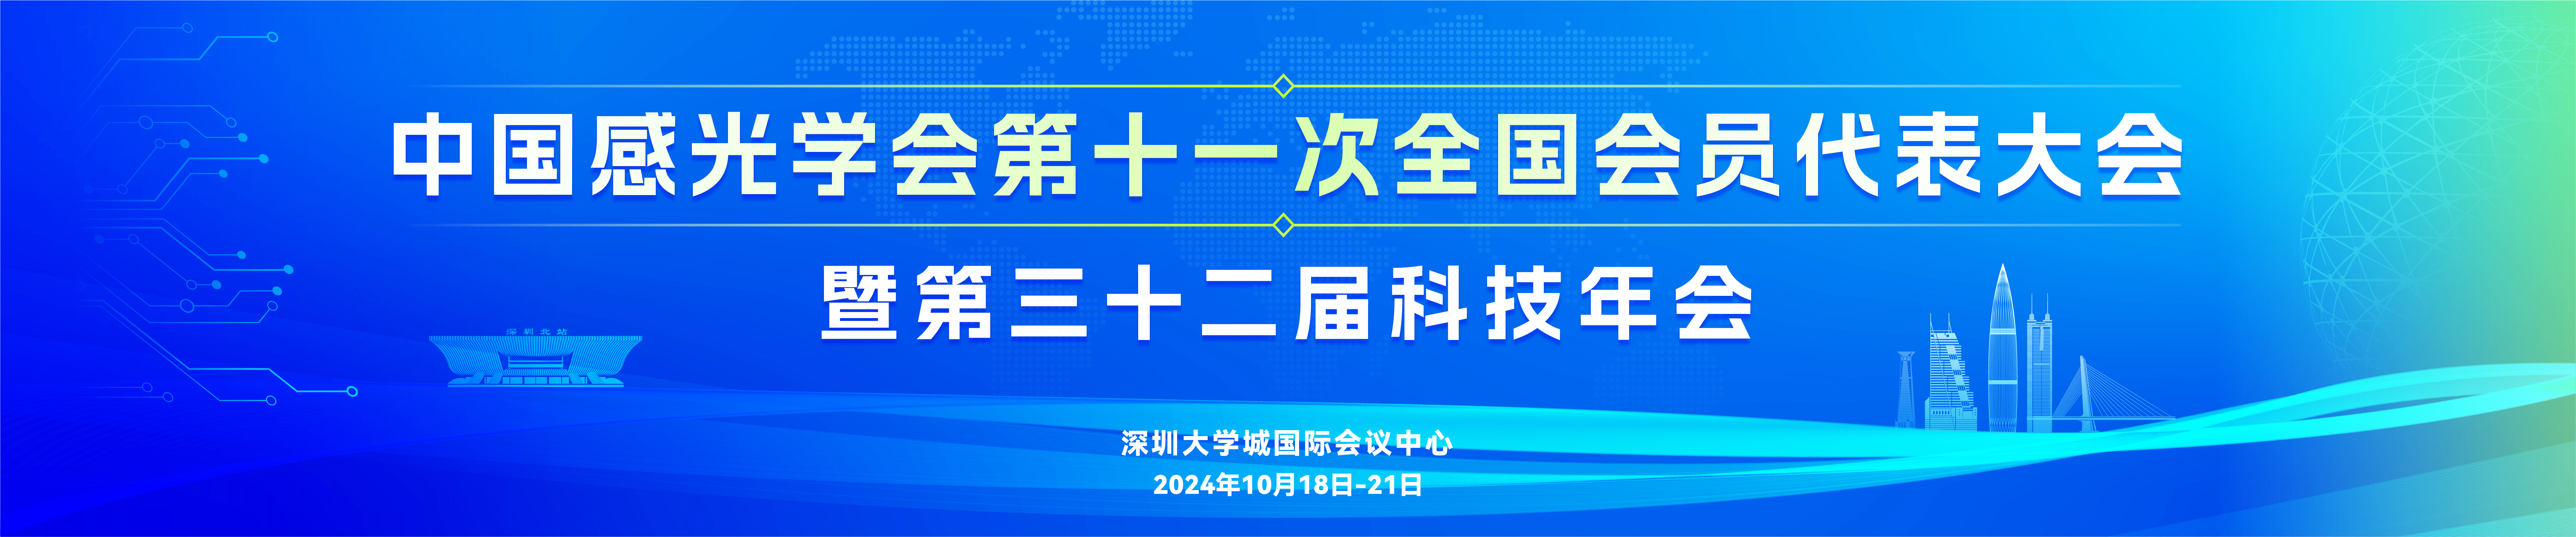 中国感光学会第十一次全国会员代表大会暨第三十二届科技年会